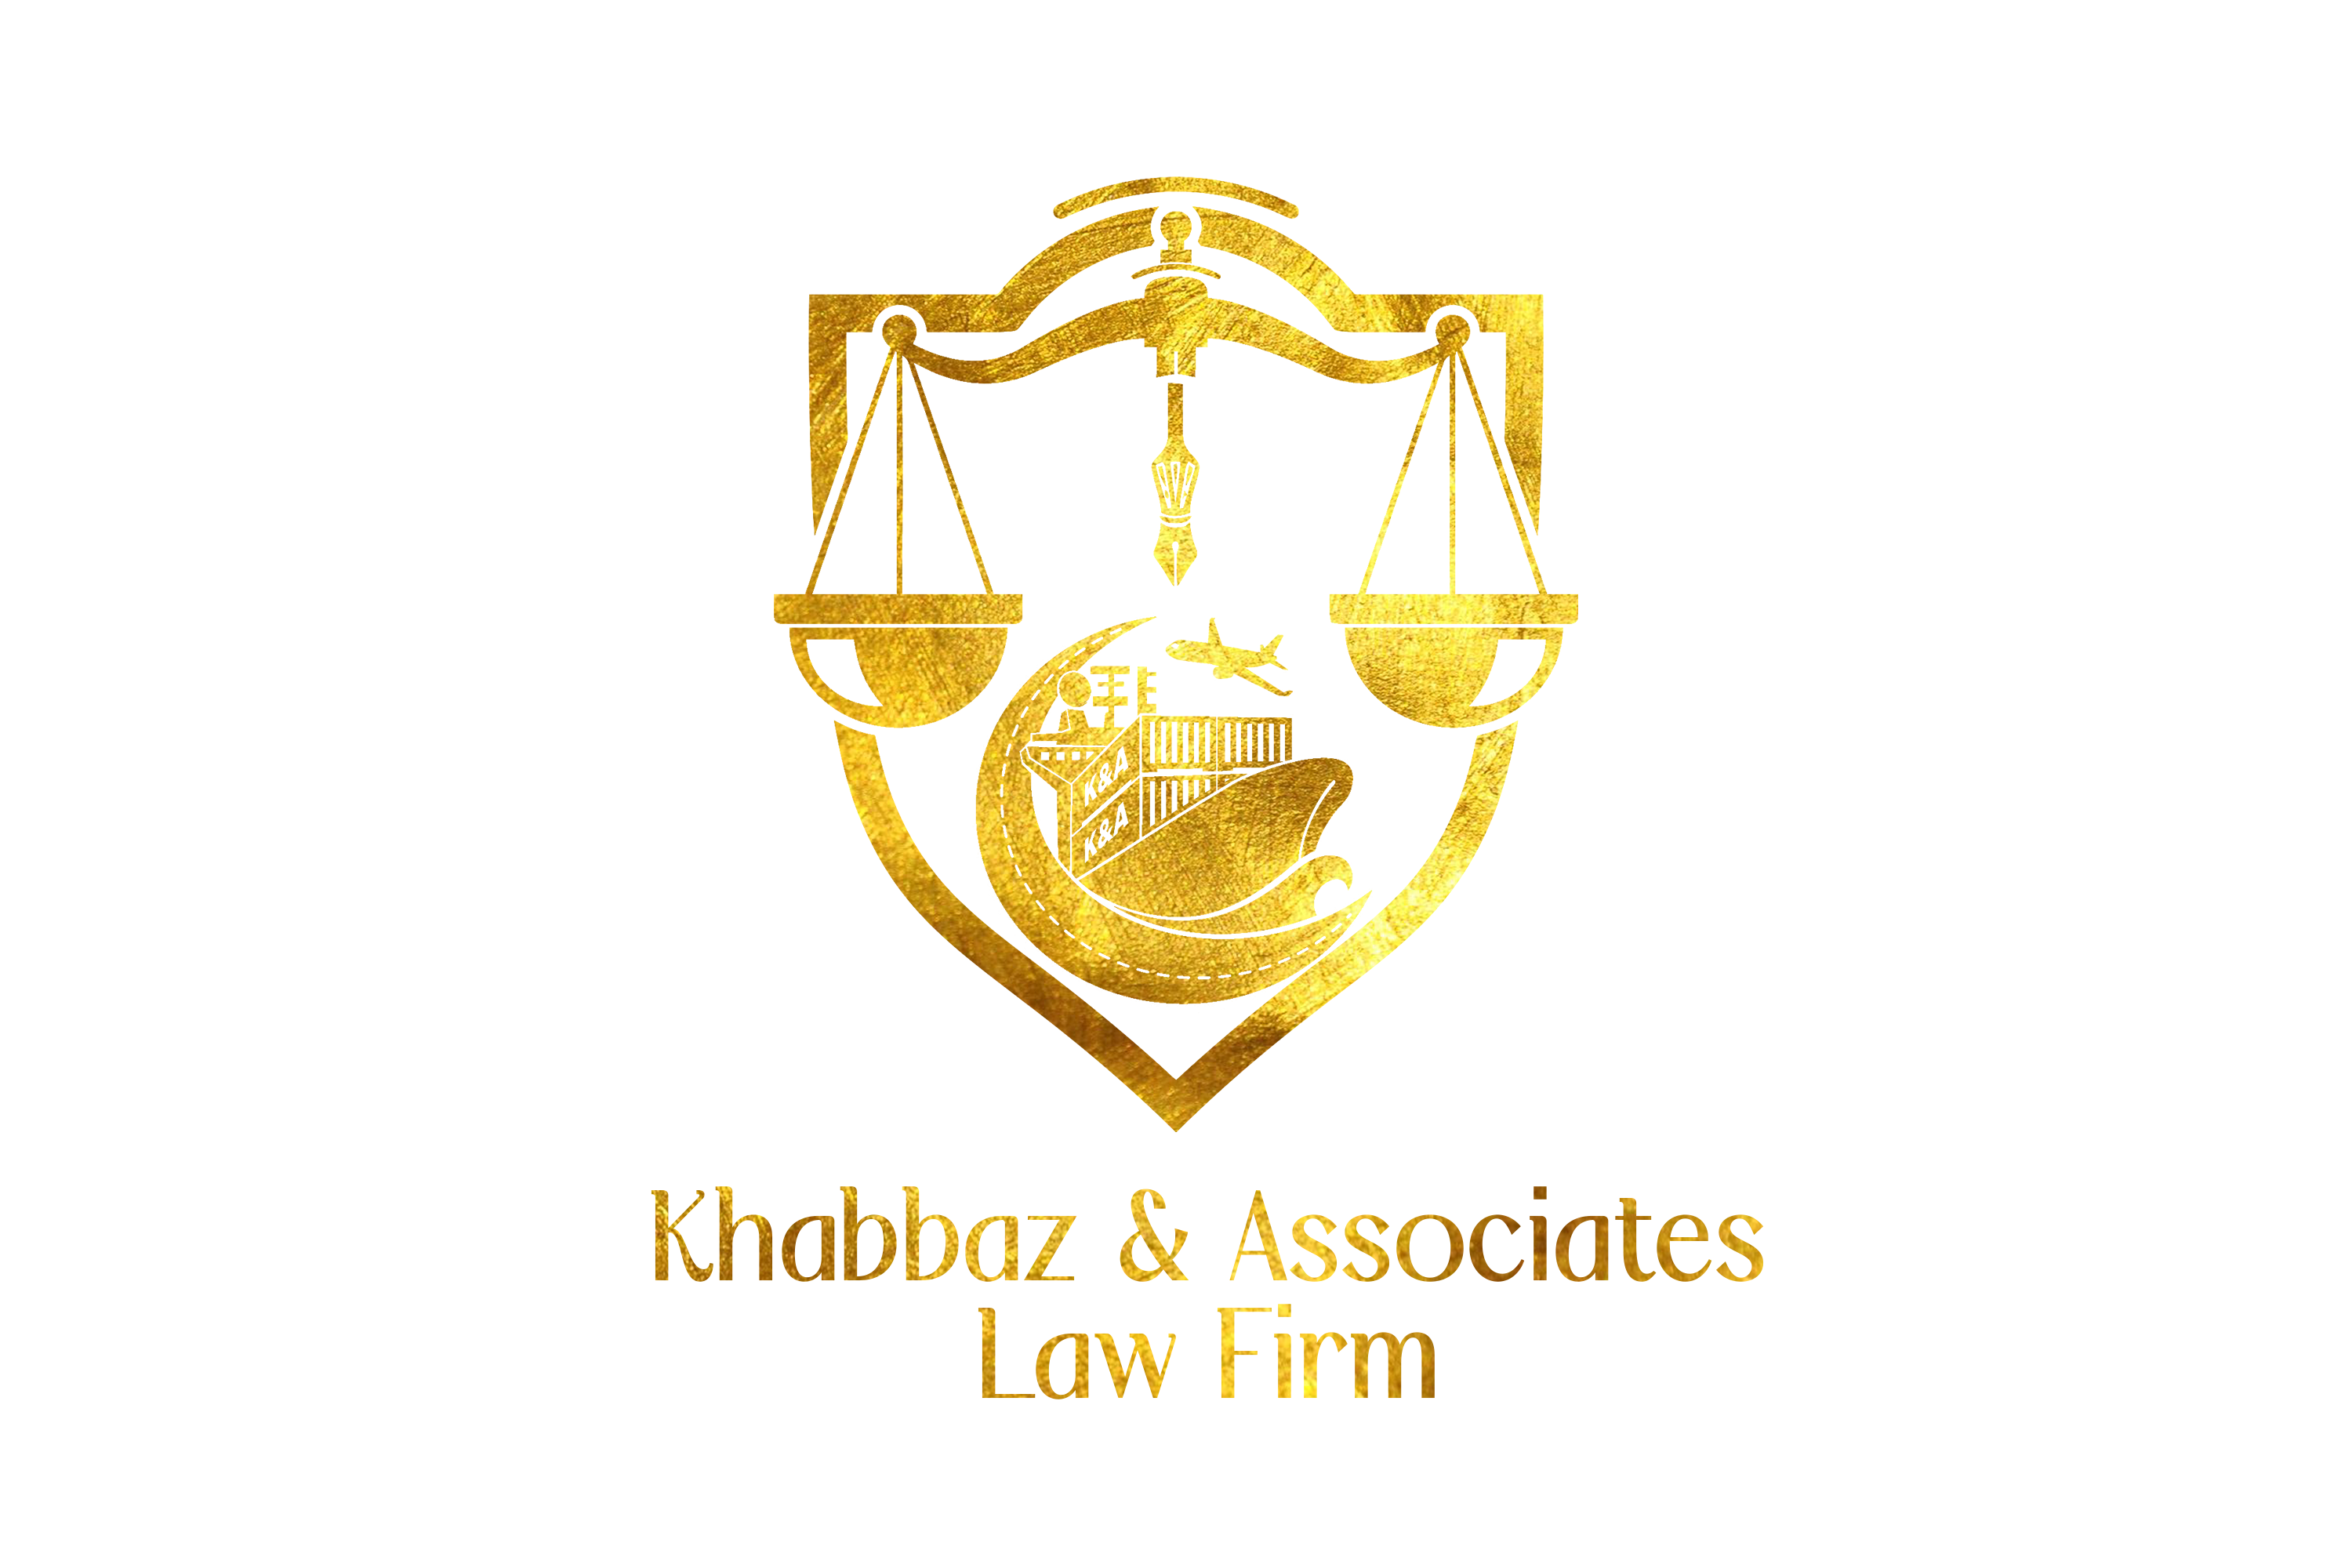 Khabbaz & Associates Law Firm